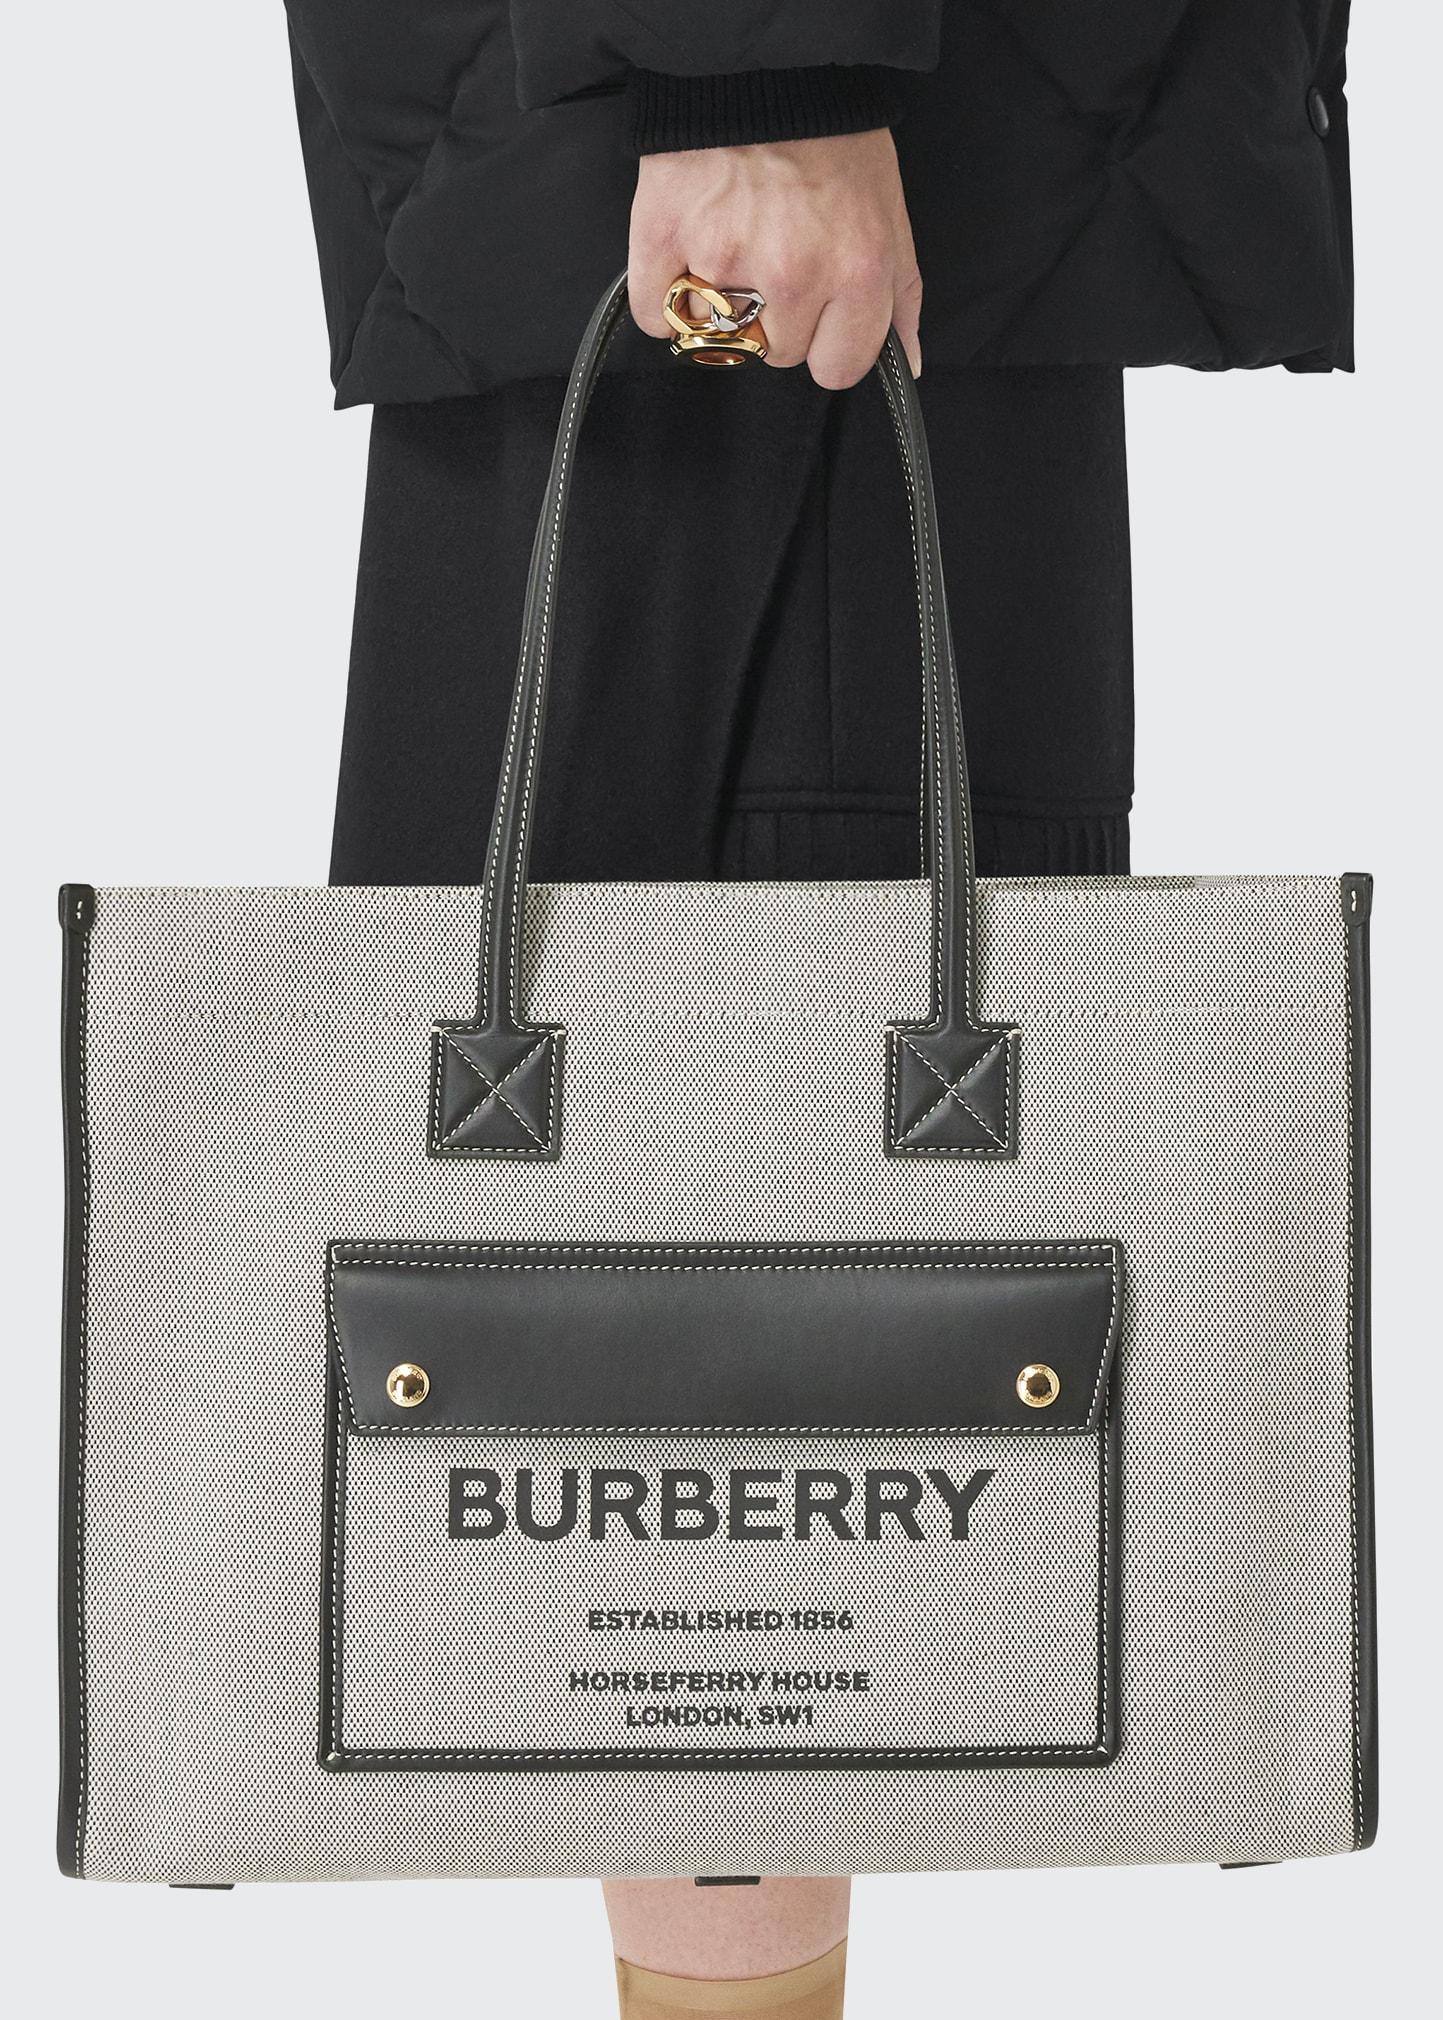 BURBERRY logo Side pocket Tote Bag Hand Bag Leather Beige